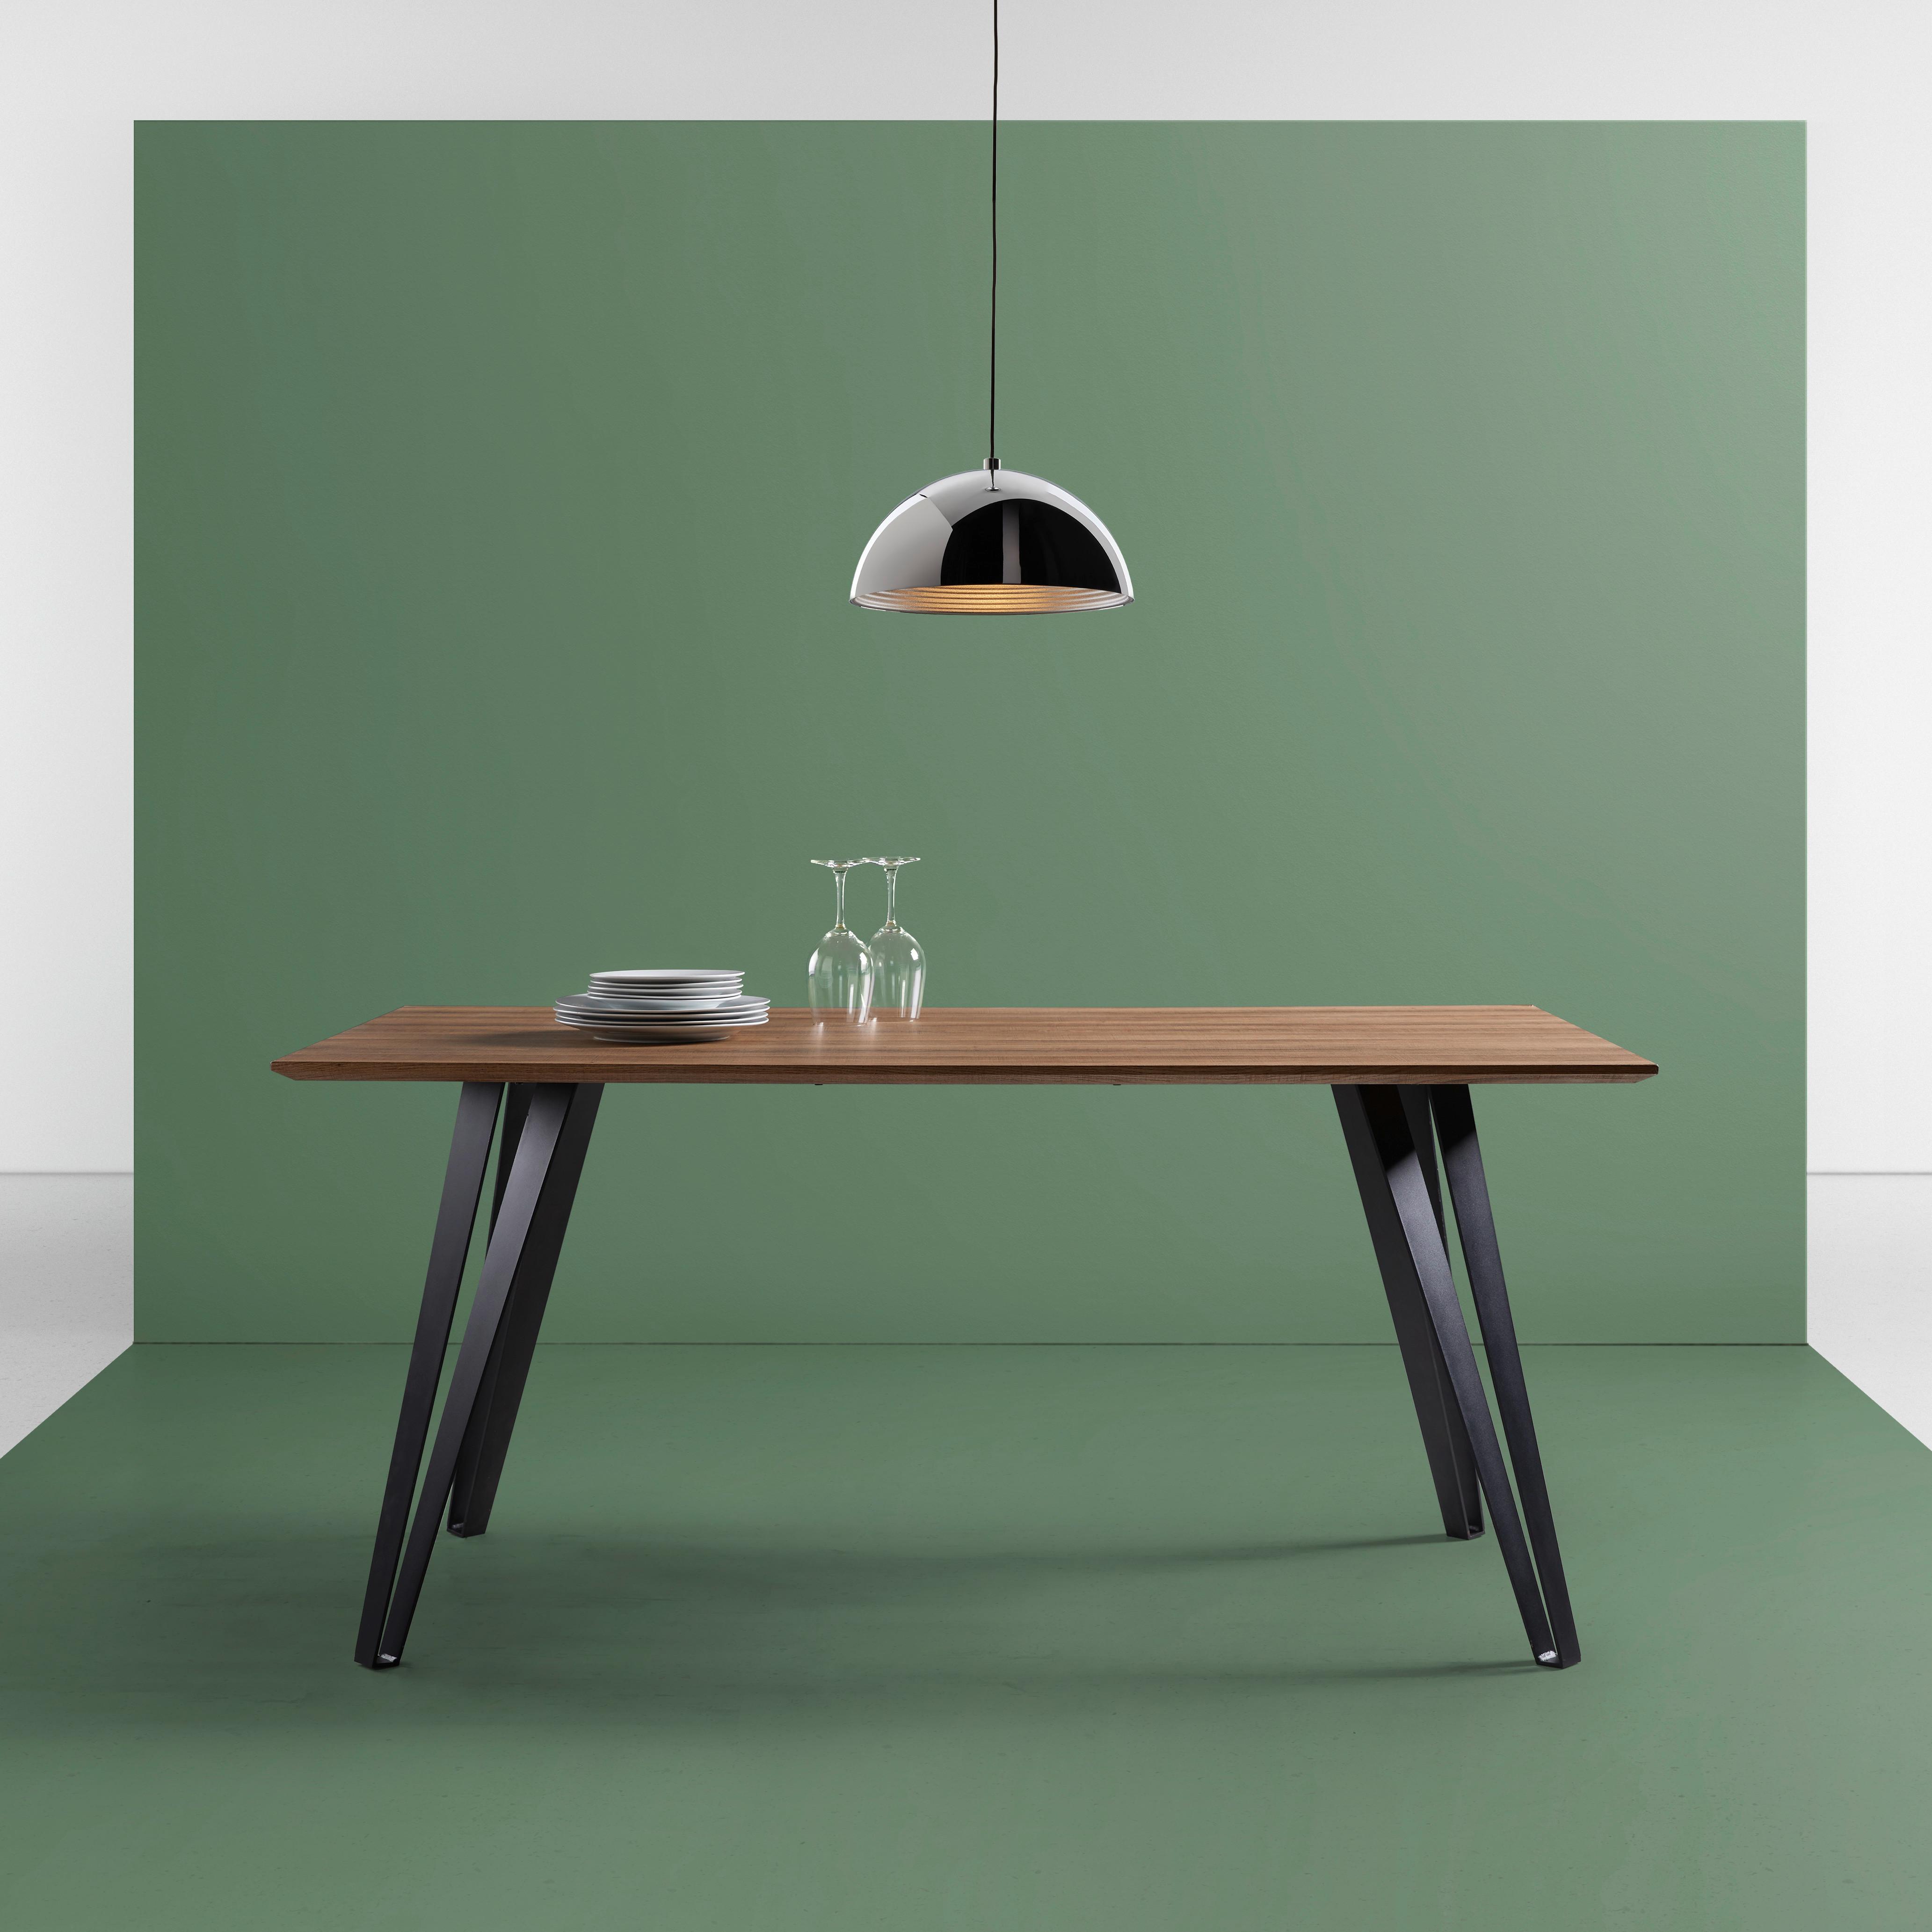 Jídelní Stůl Gino Přírodní 160x90cm - barvy teak/černá, Moderní, kov/dřevo (160/90/76cm) - Modern Living